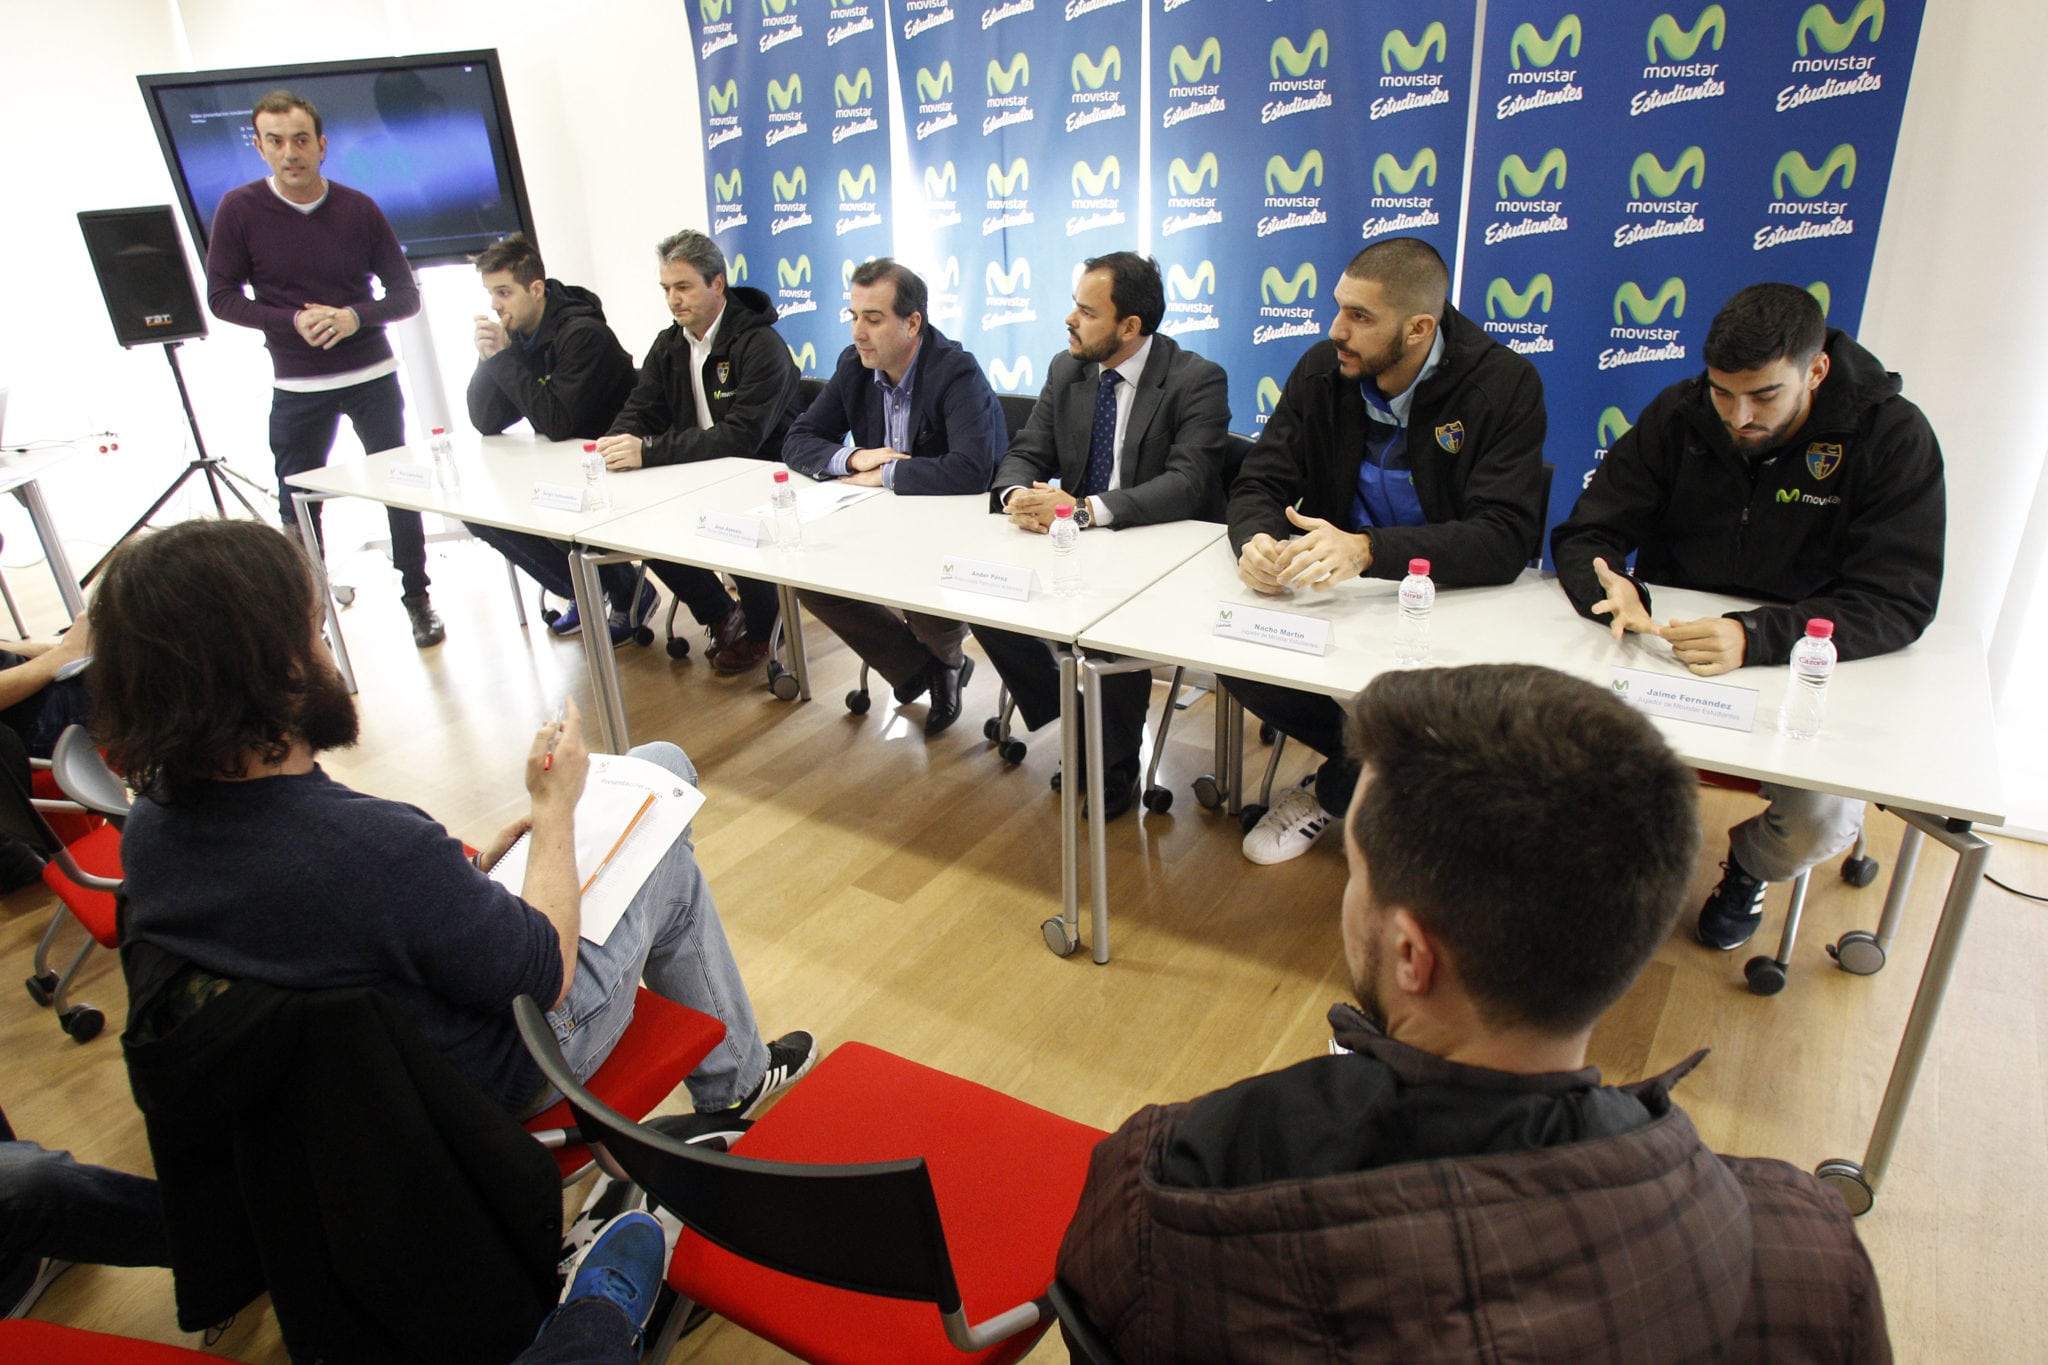 El Kiosko: el partido ante Bilbao Basket, y la presentación #NoValeRendirse, en los medios